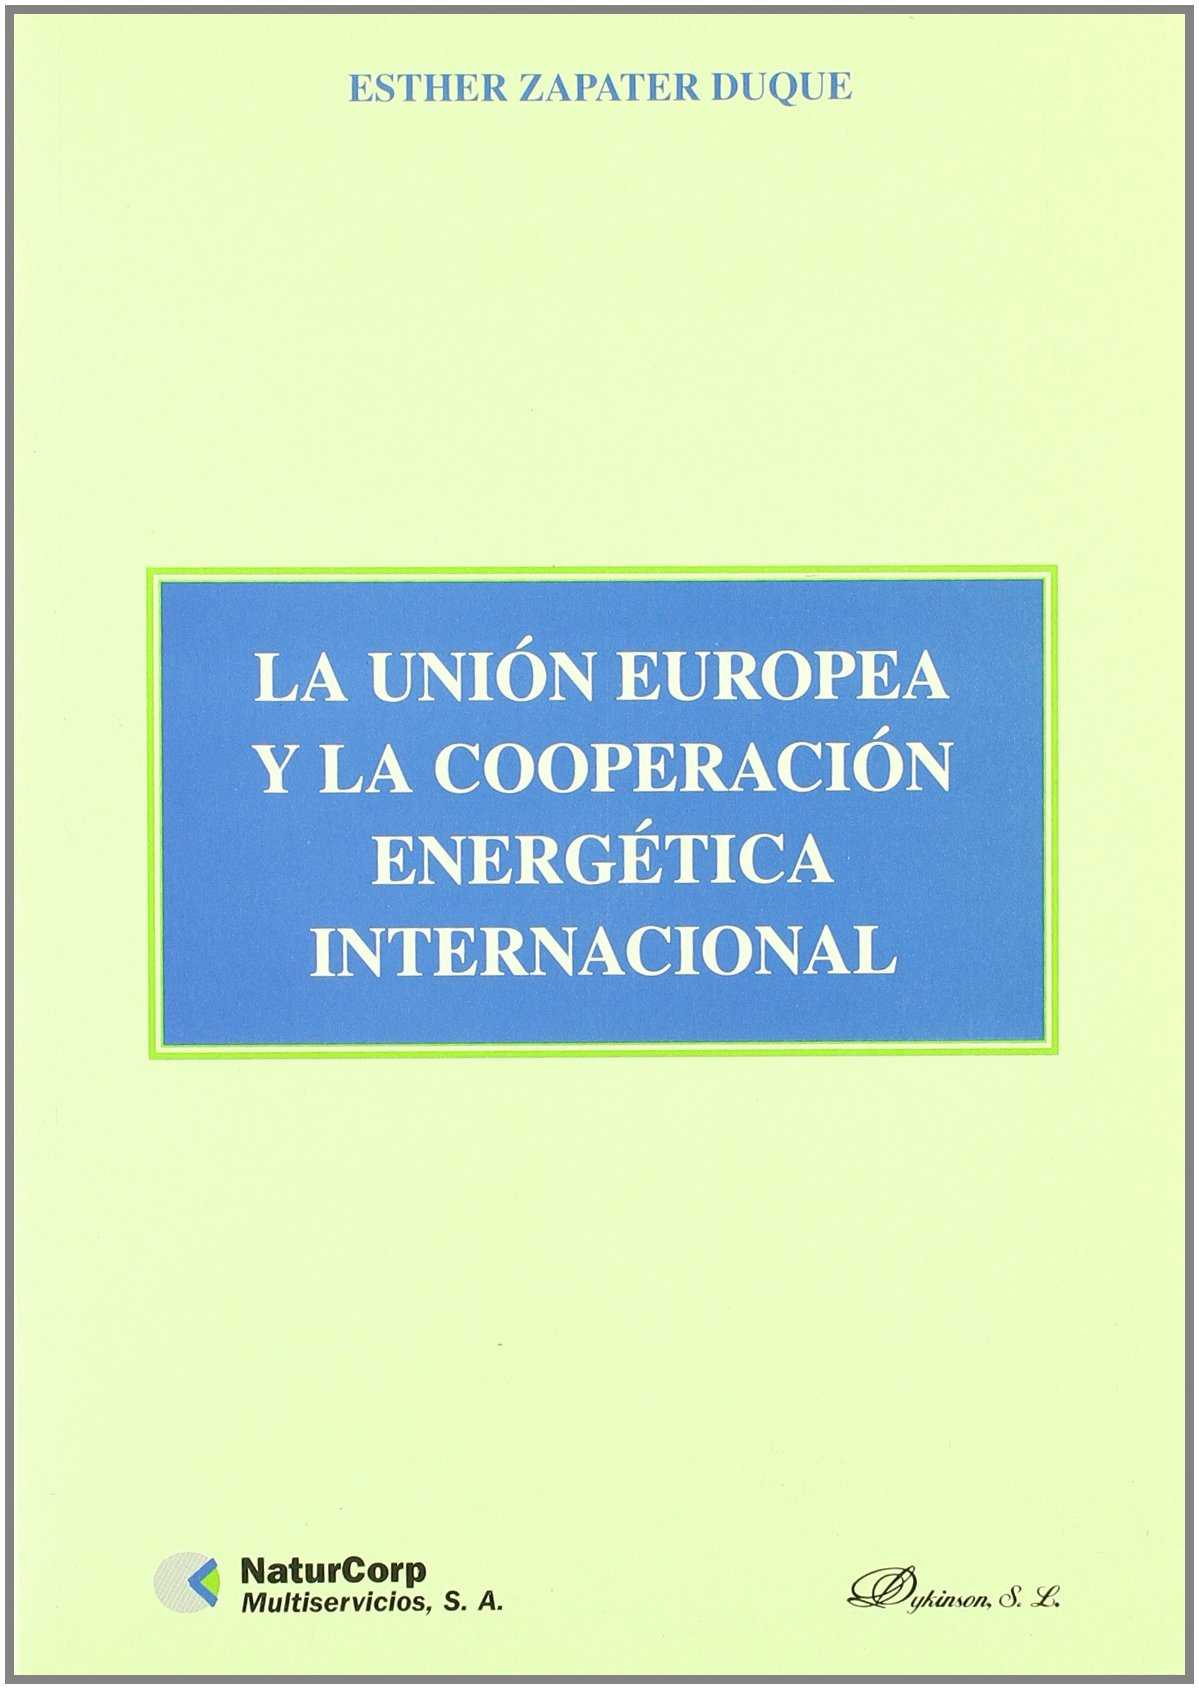 La Unión Europea y la cooperación energética internacional